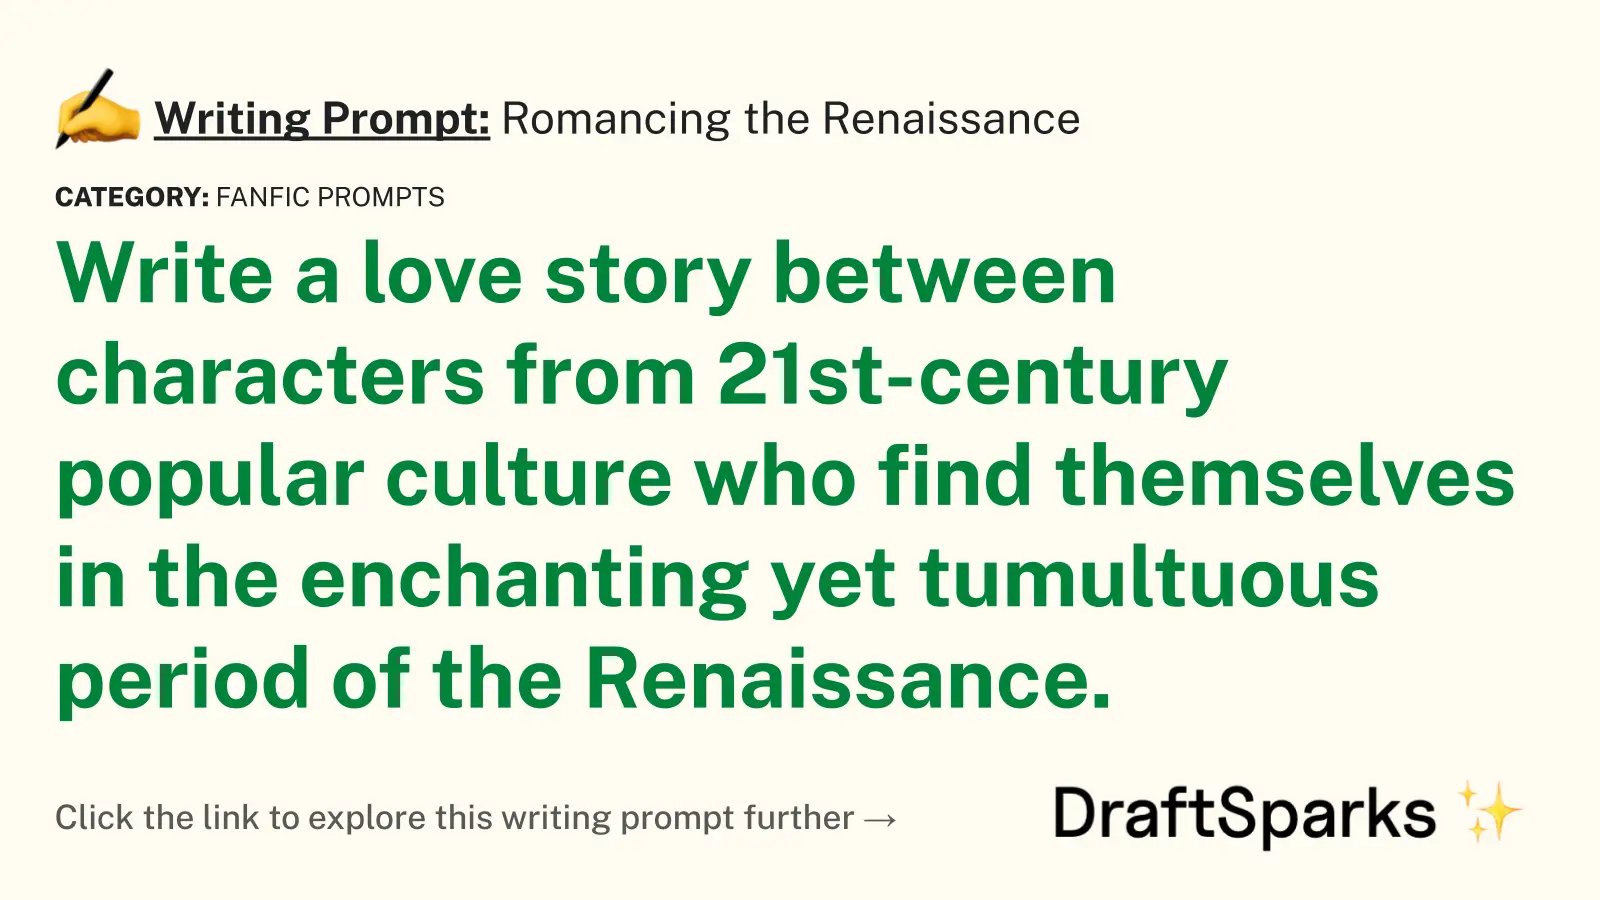 Romancing the Renaissance